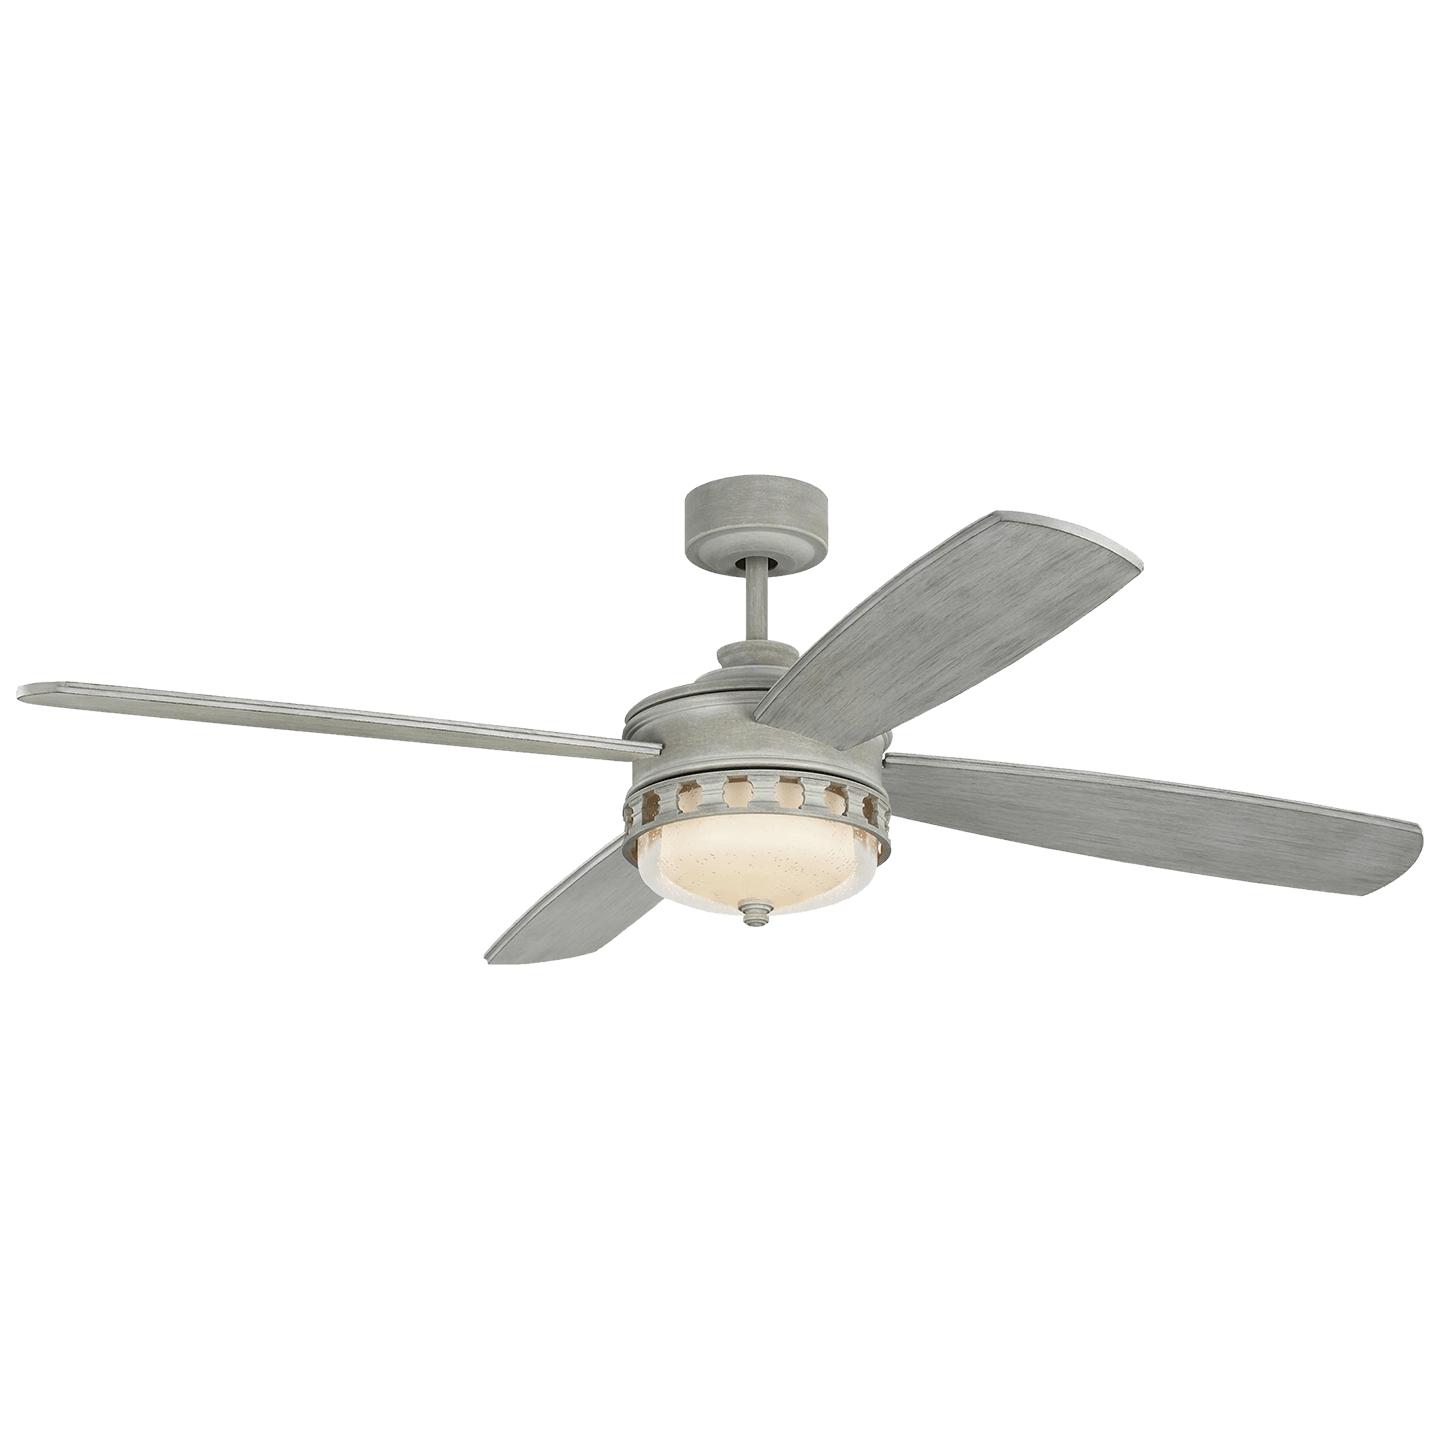 Купить Потолочный вентилятор 56" Lemont Ceiling Fan в интернет-магазине roooms.ru